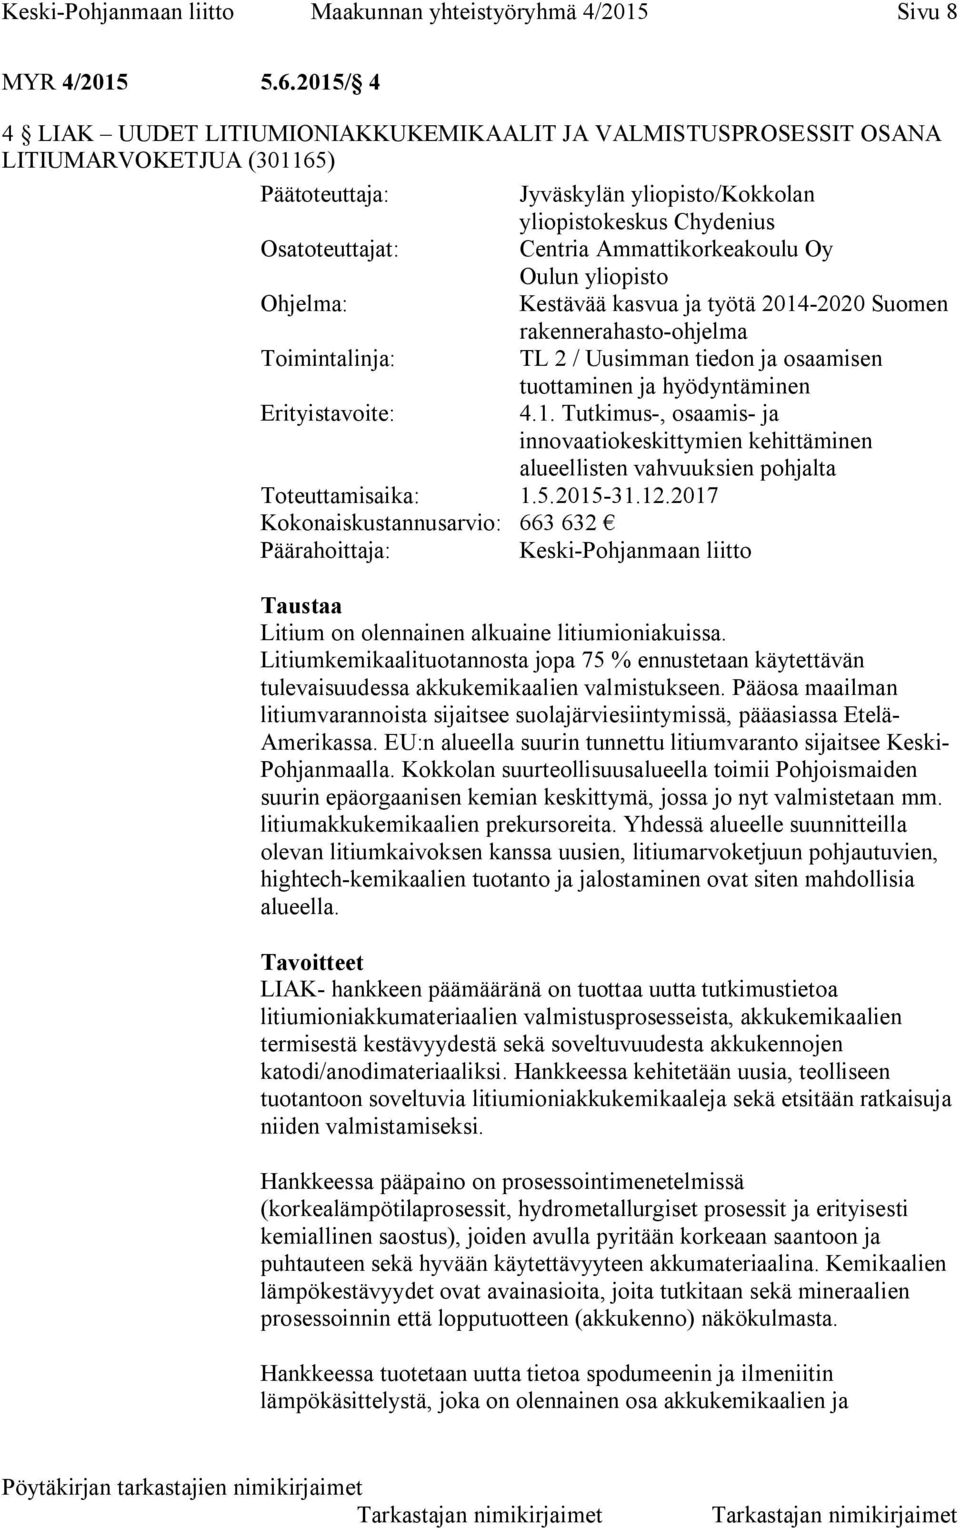 Ammattikorkeakoulu Oy Oulun yliopisto Ohjelma: Kestävää kasvua ja työtä 2014-2020 Suomen rakennerahasto-ohjelma Toimintalinja: TL 2 / Uusimman tiedon ja osaamisen tuottaminen ja hyödyntäminen